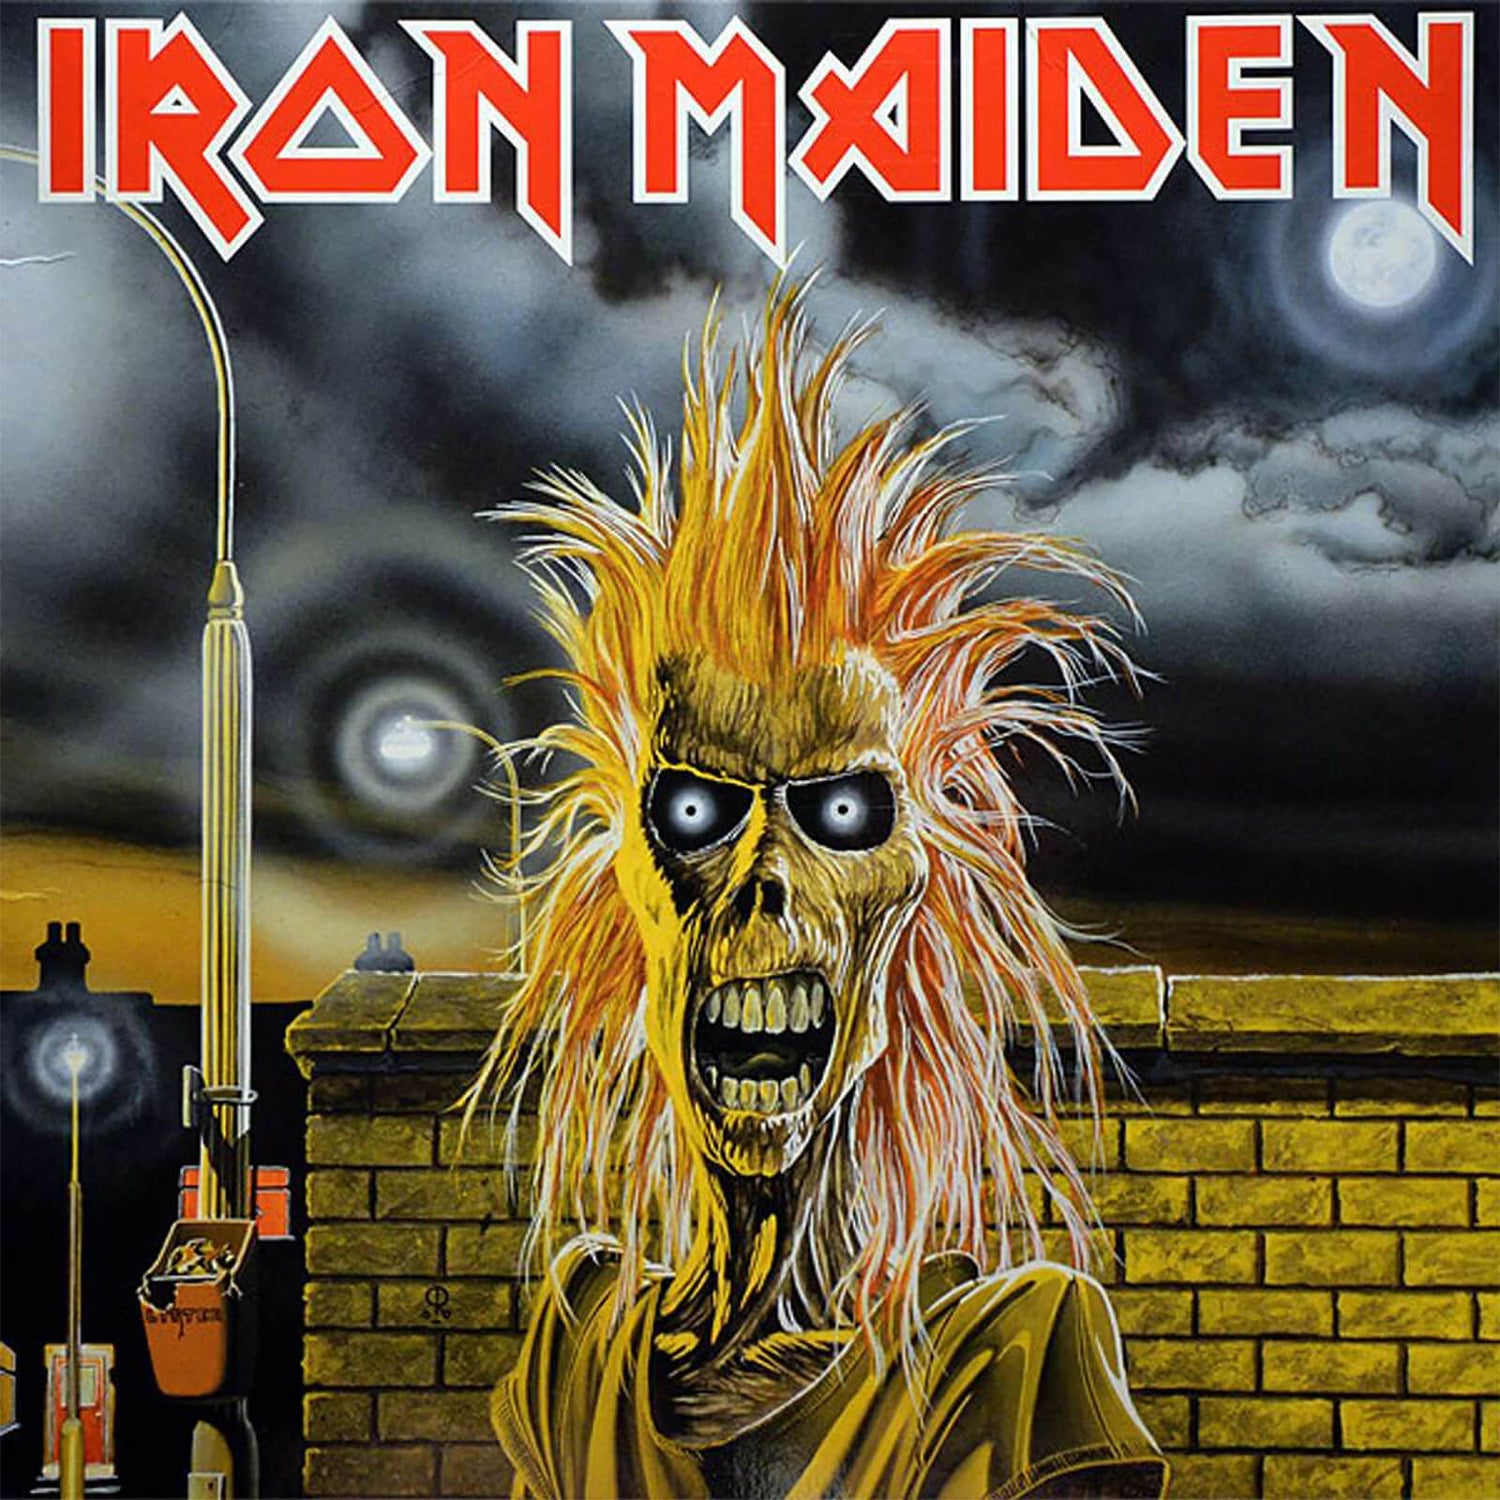 Iron Maiden - Iron Maiden Vinyl